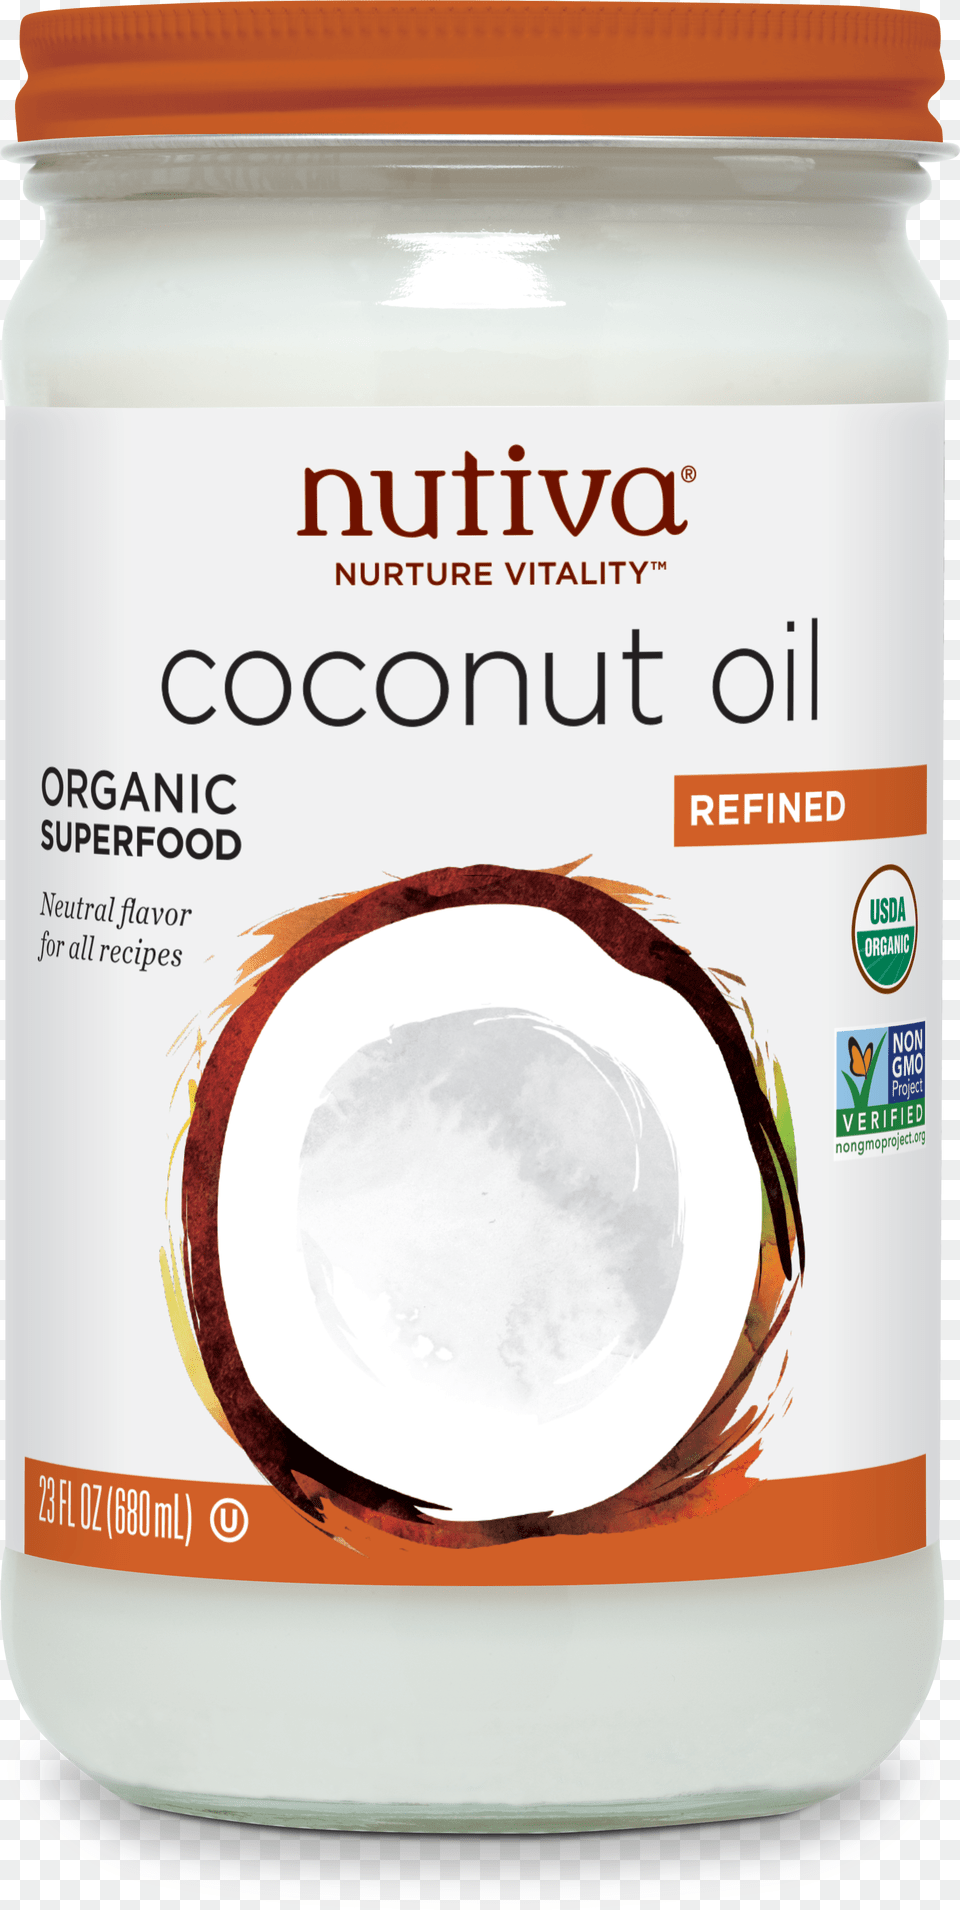 Nutiva Refined Coconut Oil Nutiva Nutiva Coconut Oil Png